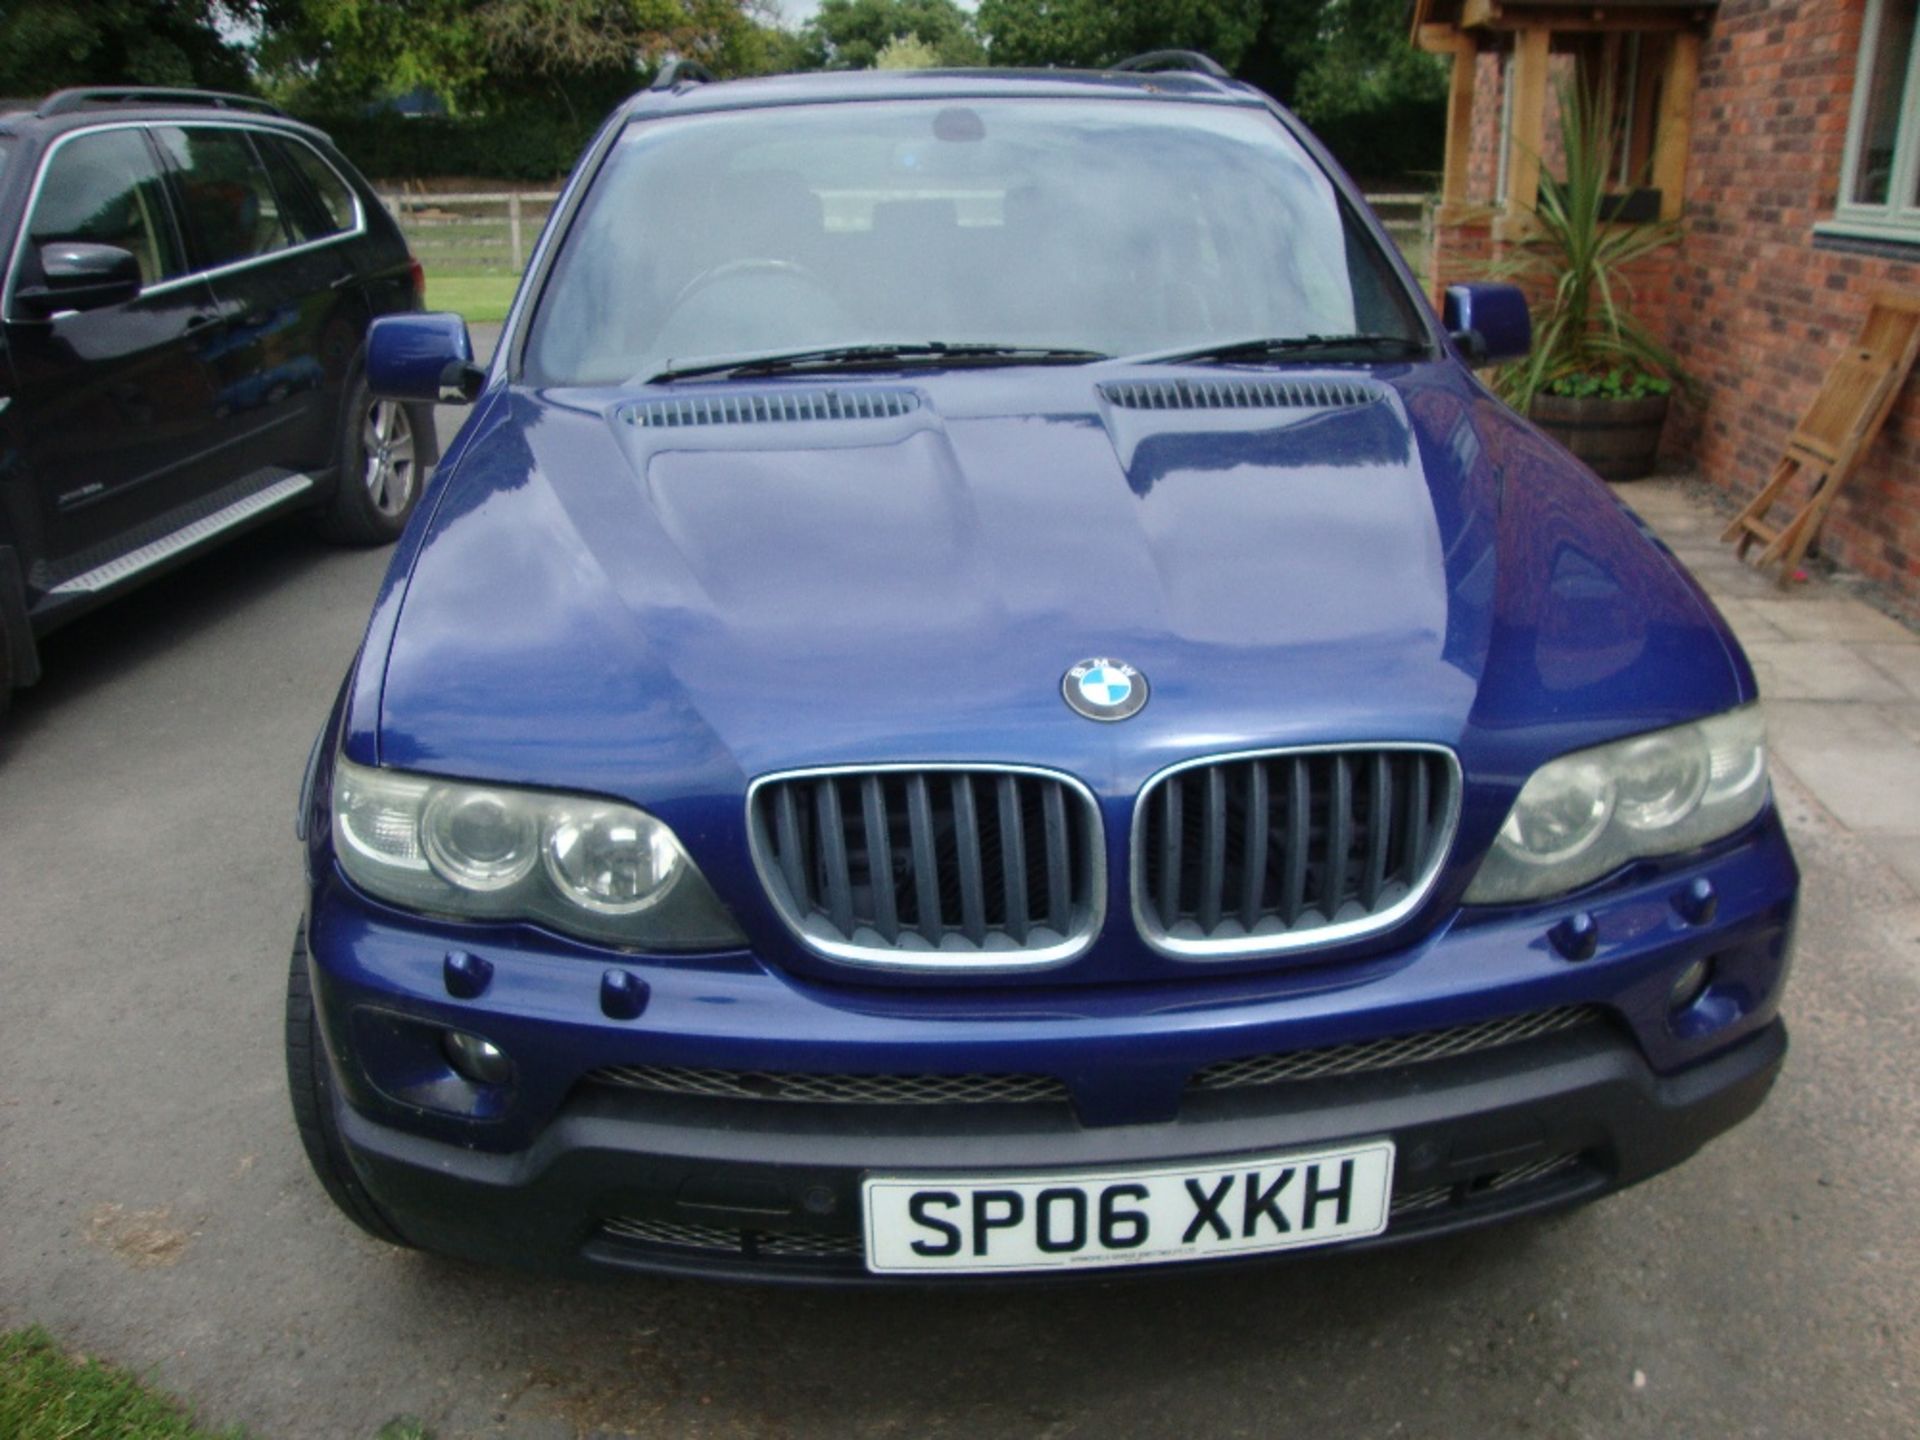 BMW X5 DIESEL CAR - Image 2 of 6